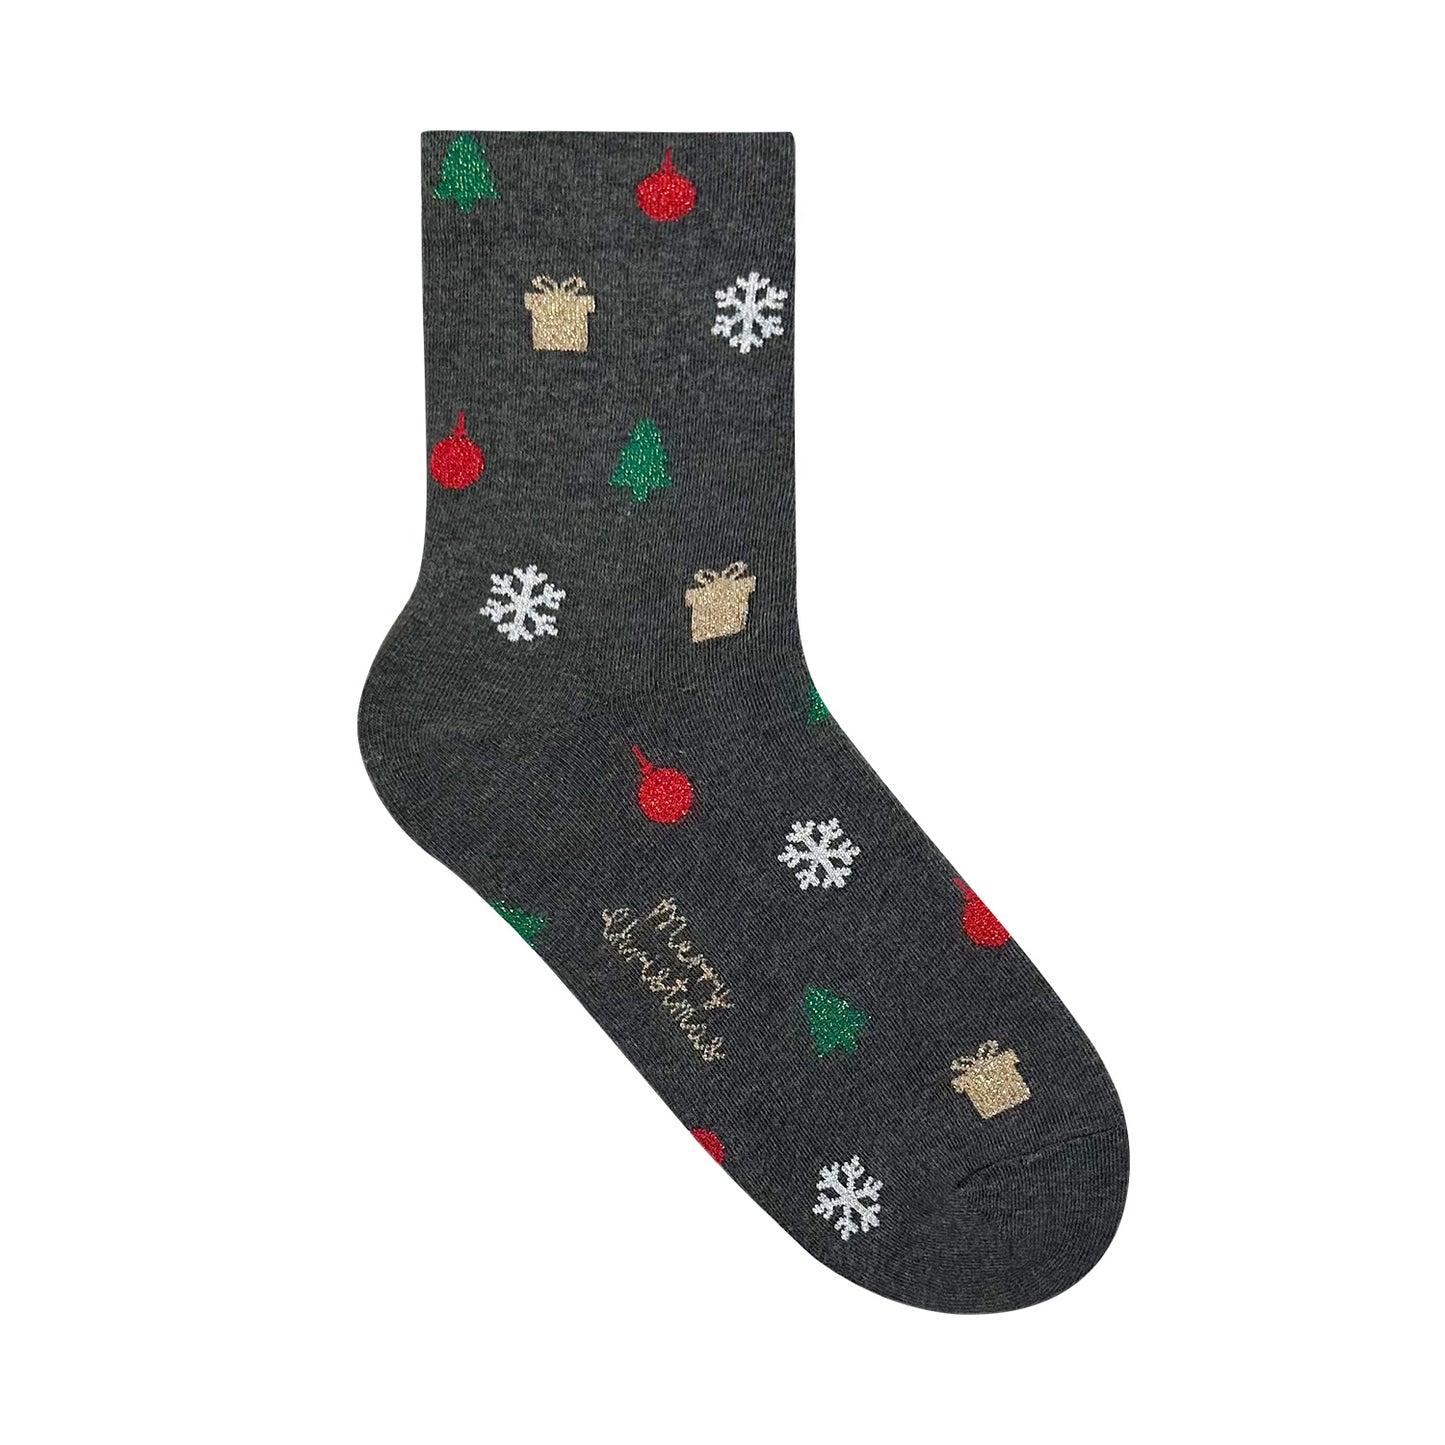 Women's Crew Christmas Gift Socks